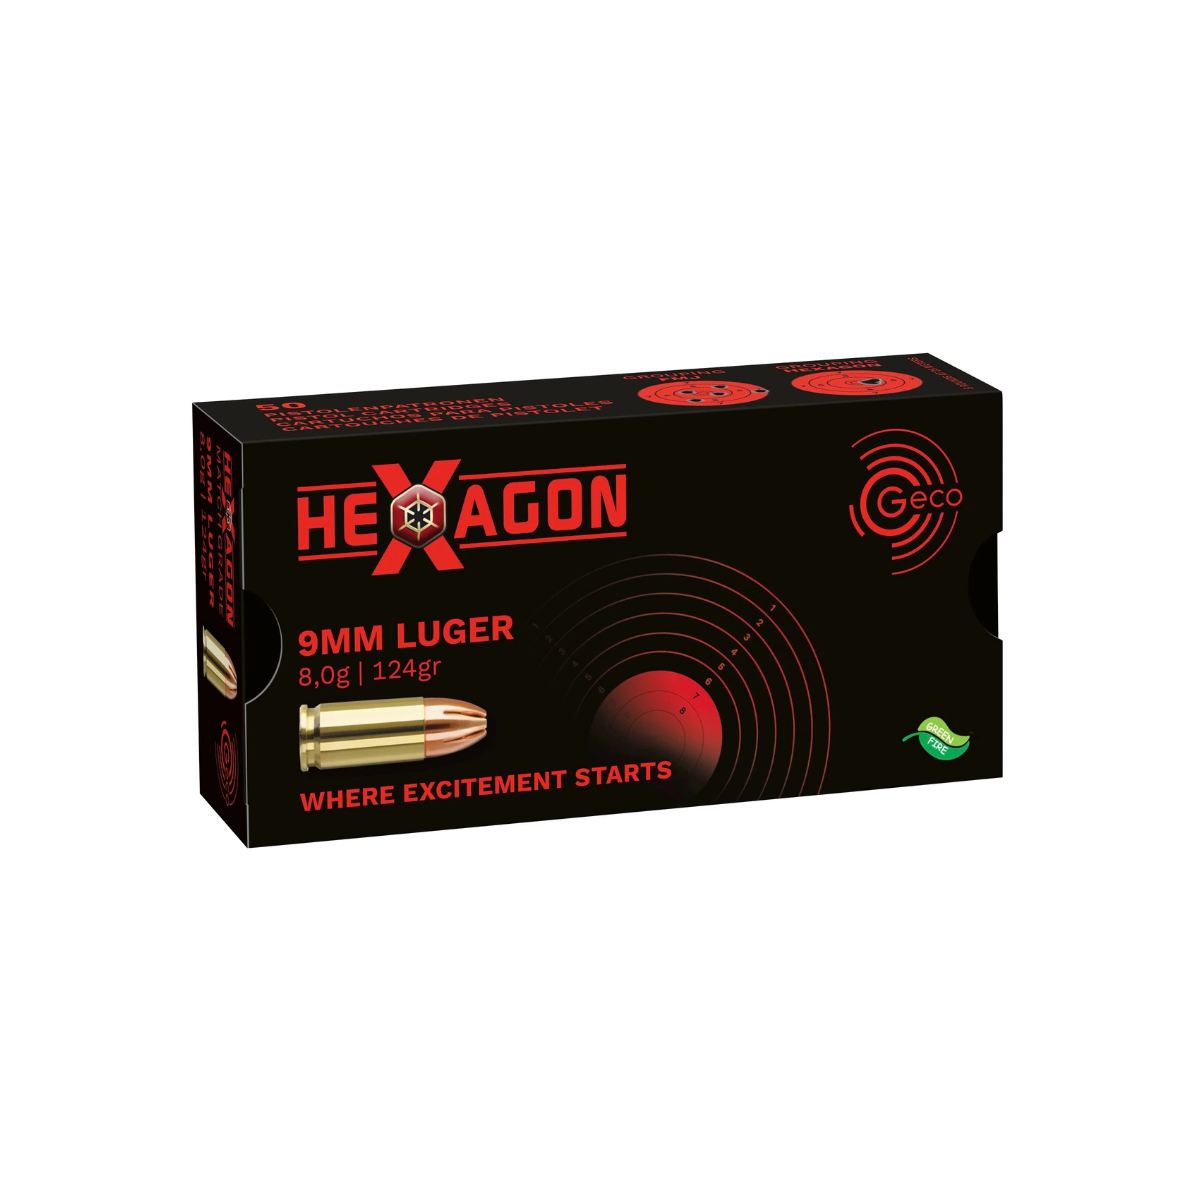 9 mm Luger Hexagon SX 8,0g/124grs. Geco